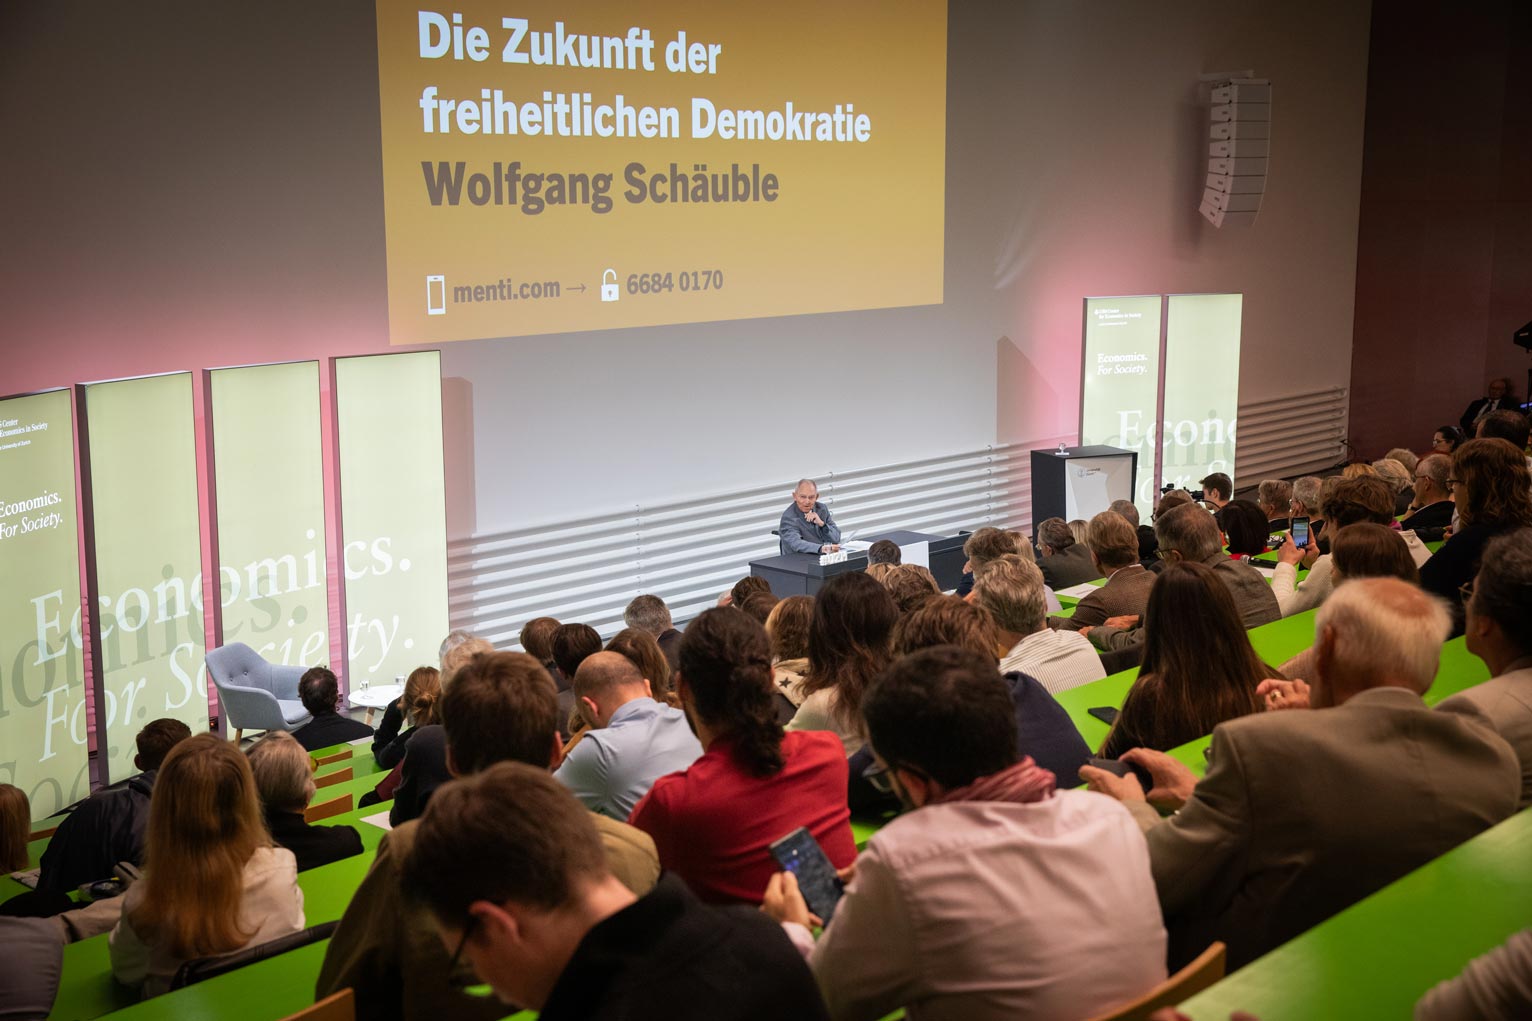 Wolfgang Schäuble during his speech at Universität Zürich © UBS Center / Ueli Christoffel